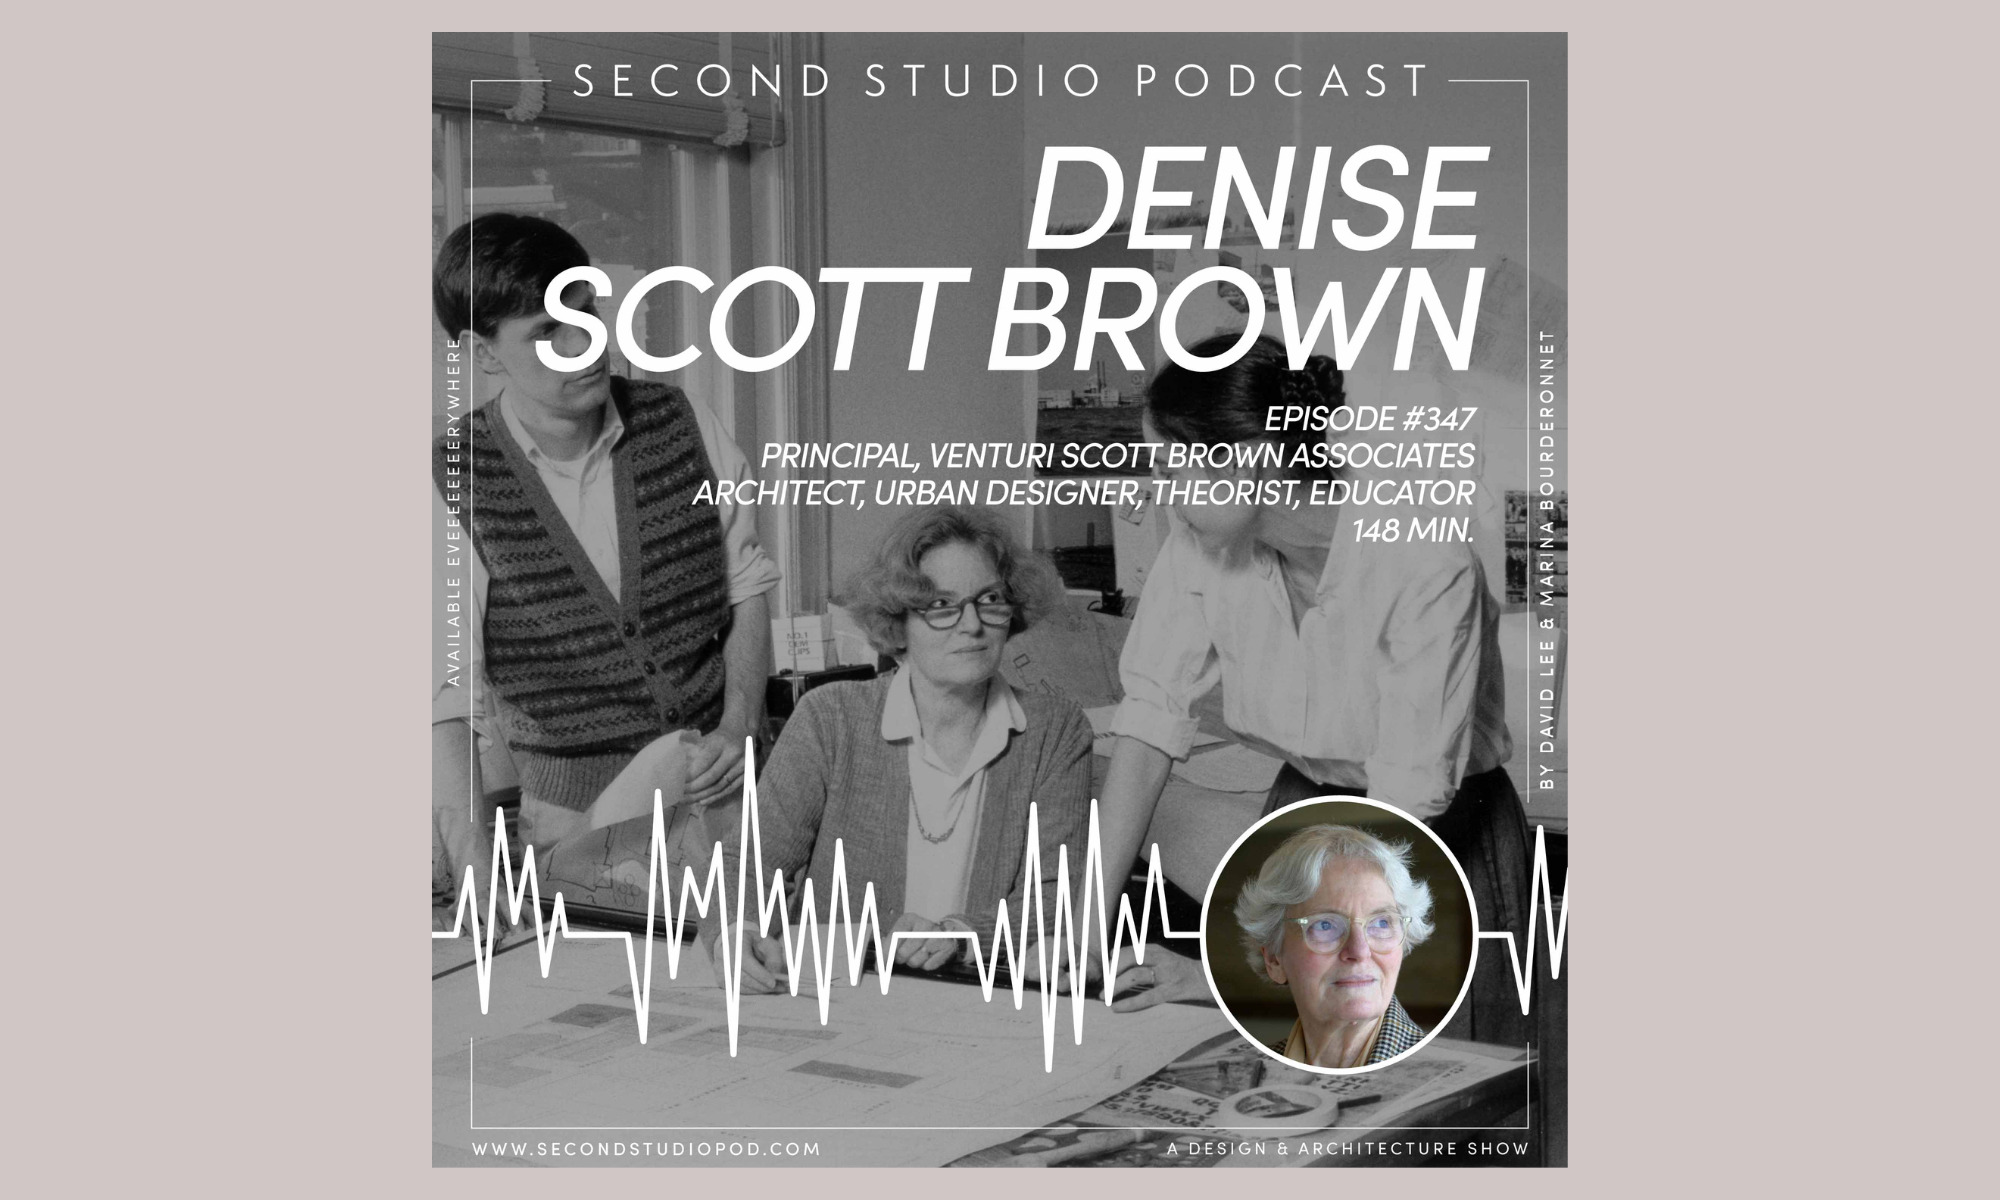 Второй студийный подкаст: интервью с Дениз Скотт Браун